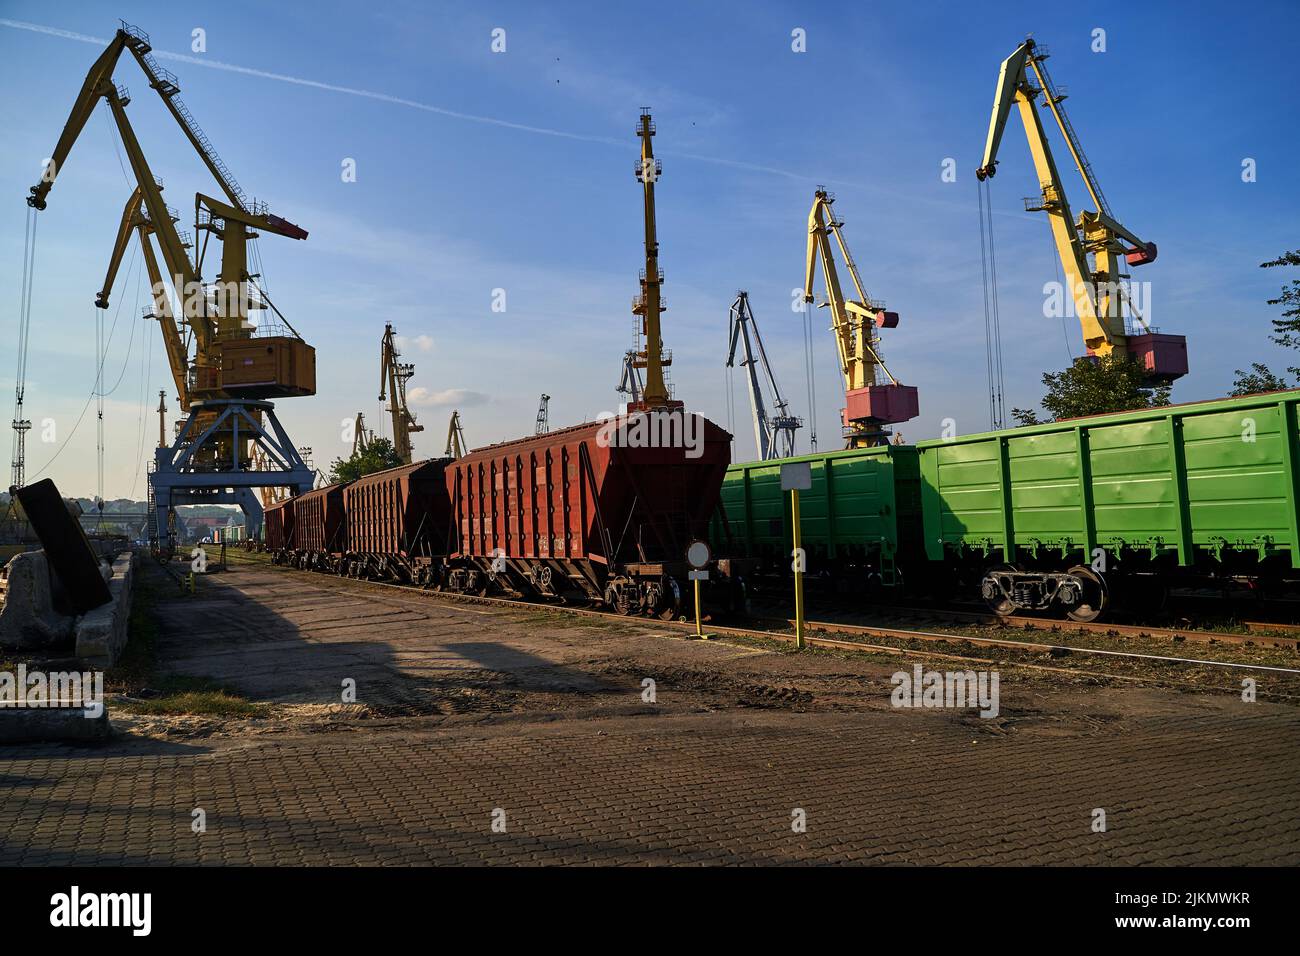 Eisenbahnwaggon in einem Industriehafen. Eisenbahnwaggon für den Erztransport im kommerziellen Seehafen Stockfoto